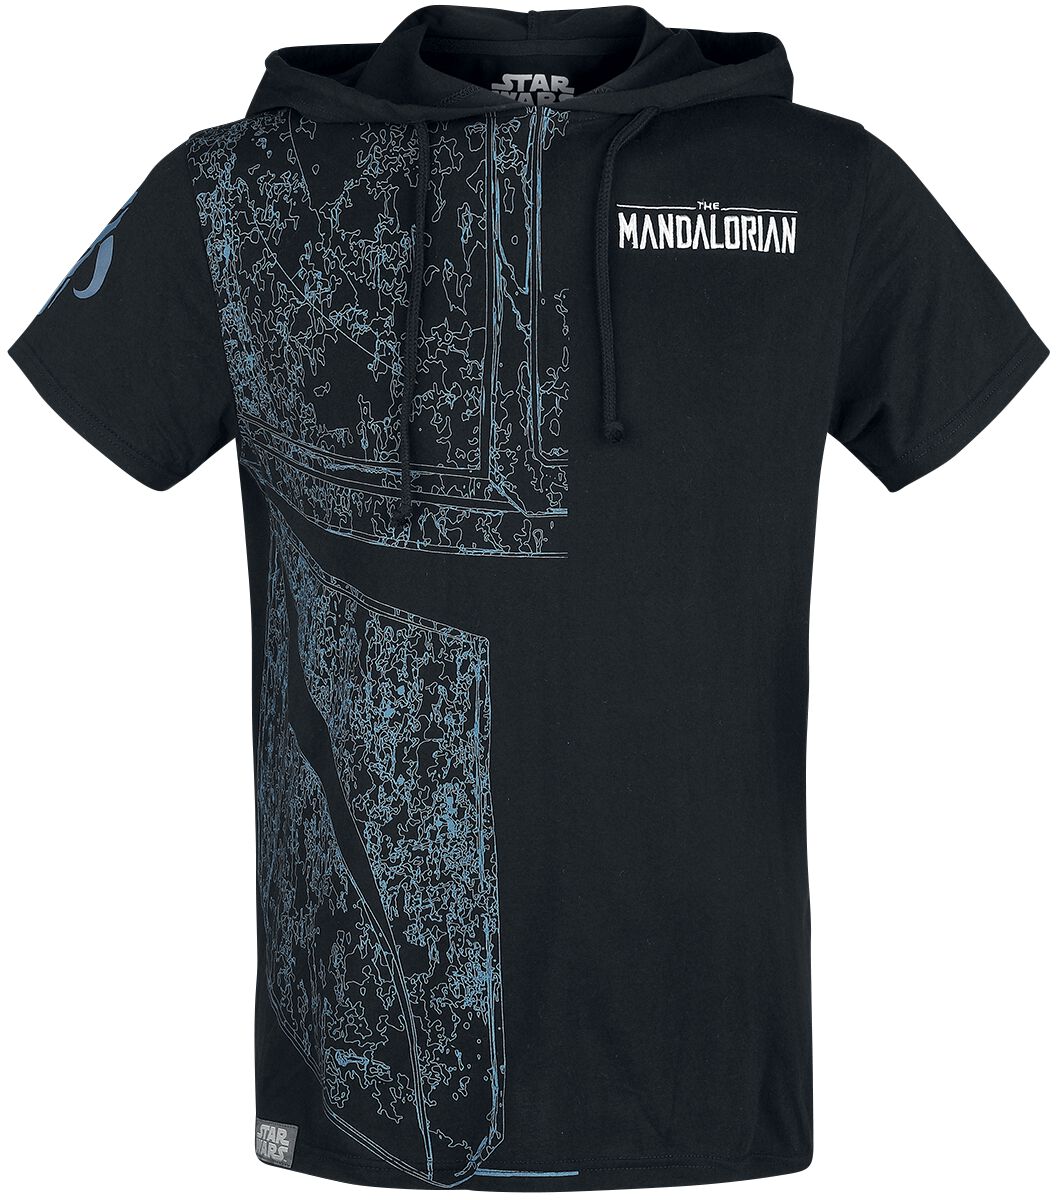 Star Wars T-Shirt - The Mandalorian - S bis XXL - für Männer - Größe XXL - schwarz  - EMP exklusives Merchandise!